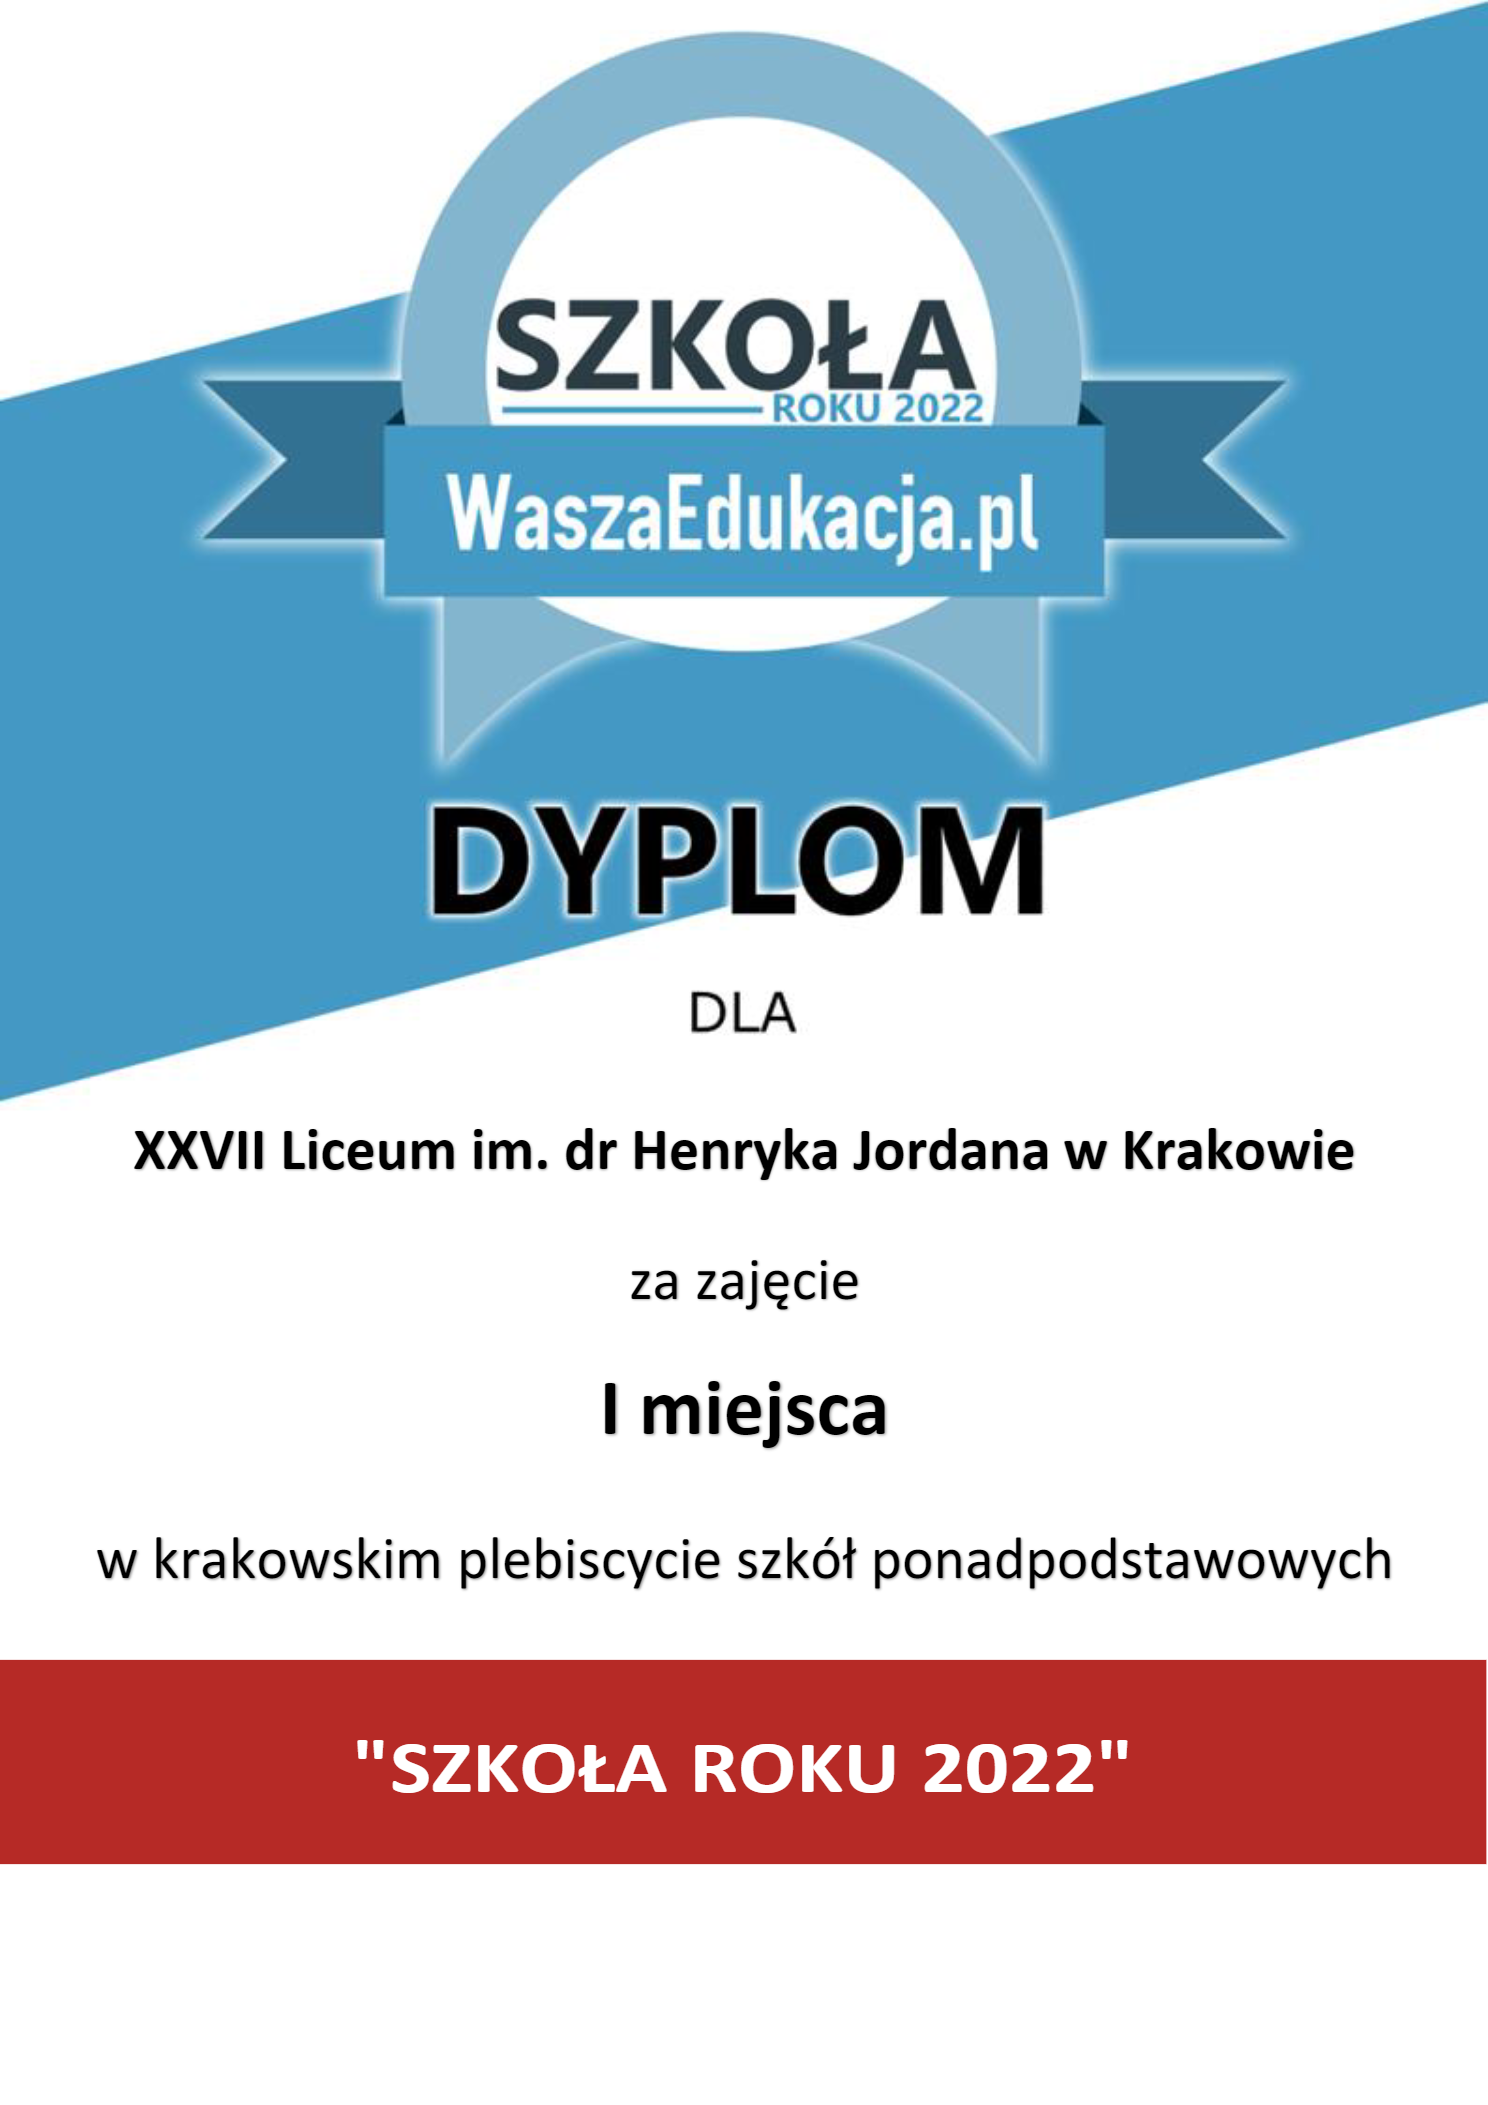 http://zso18.krakow.pl/liceum/wp-content/uploads/sites/3/2022/04/DSR20221.png